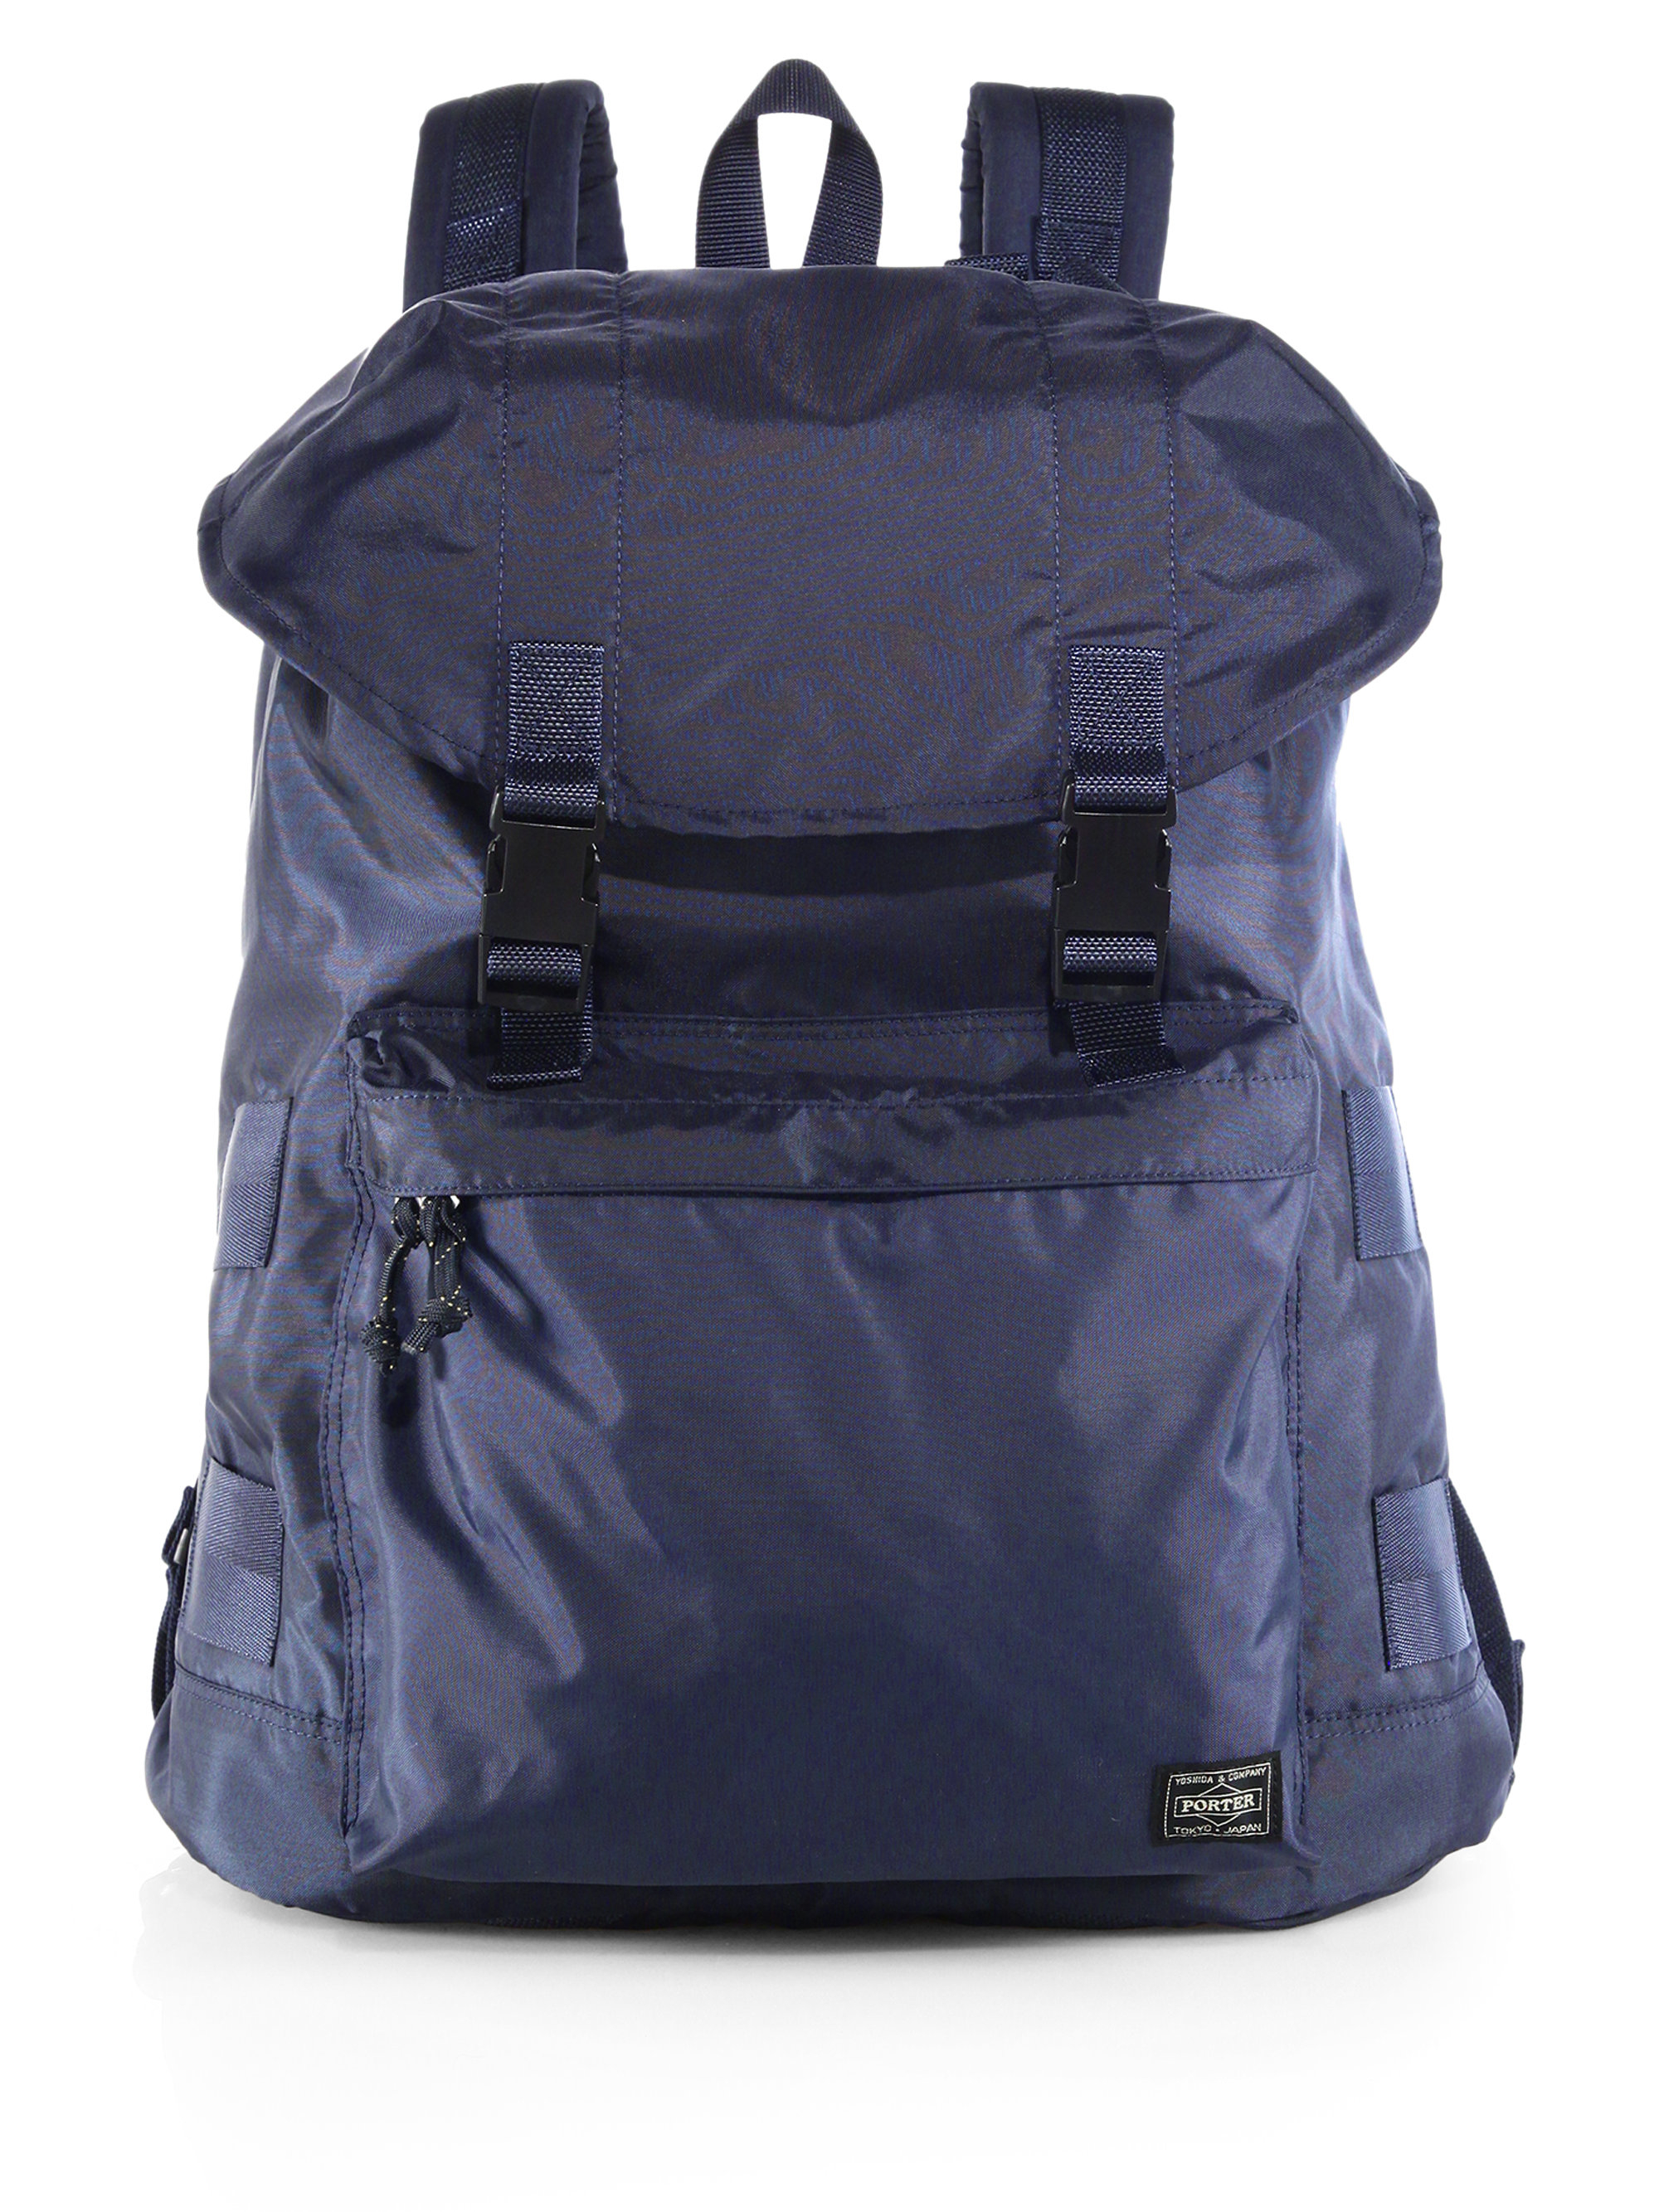 Lyst - Porter Nylon Rucksack Backpack in Blue for Men